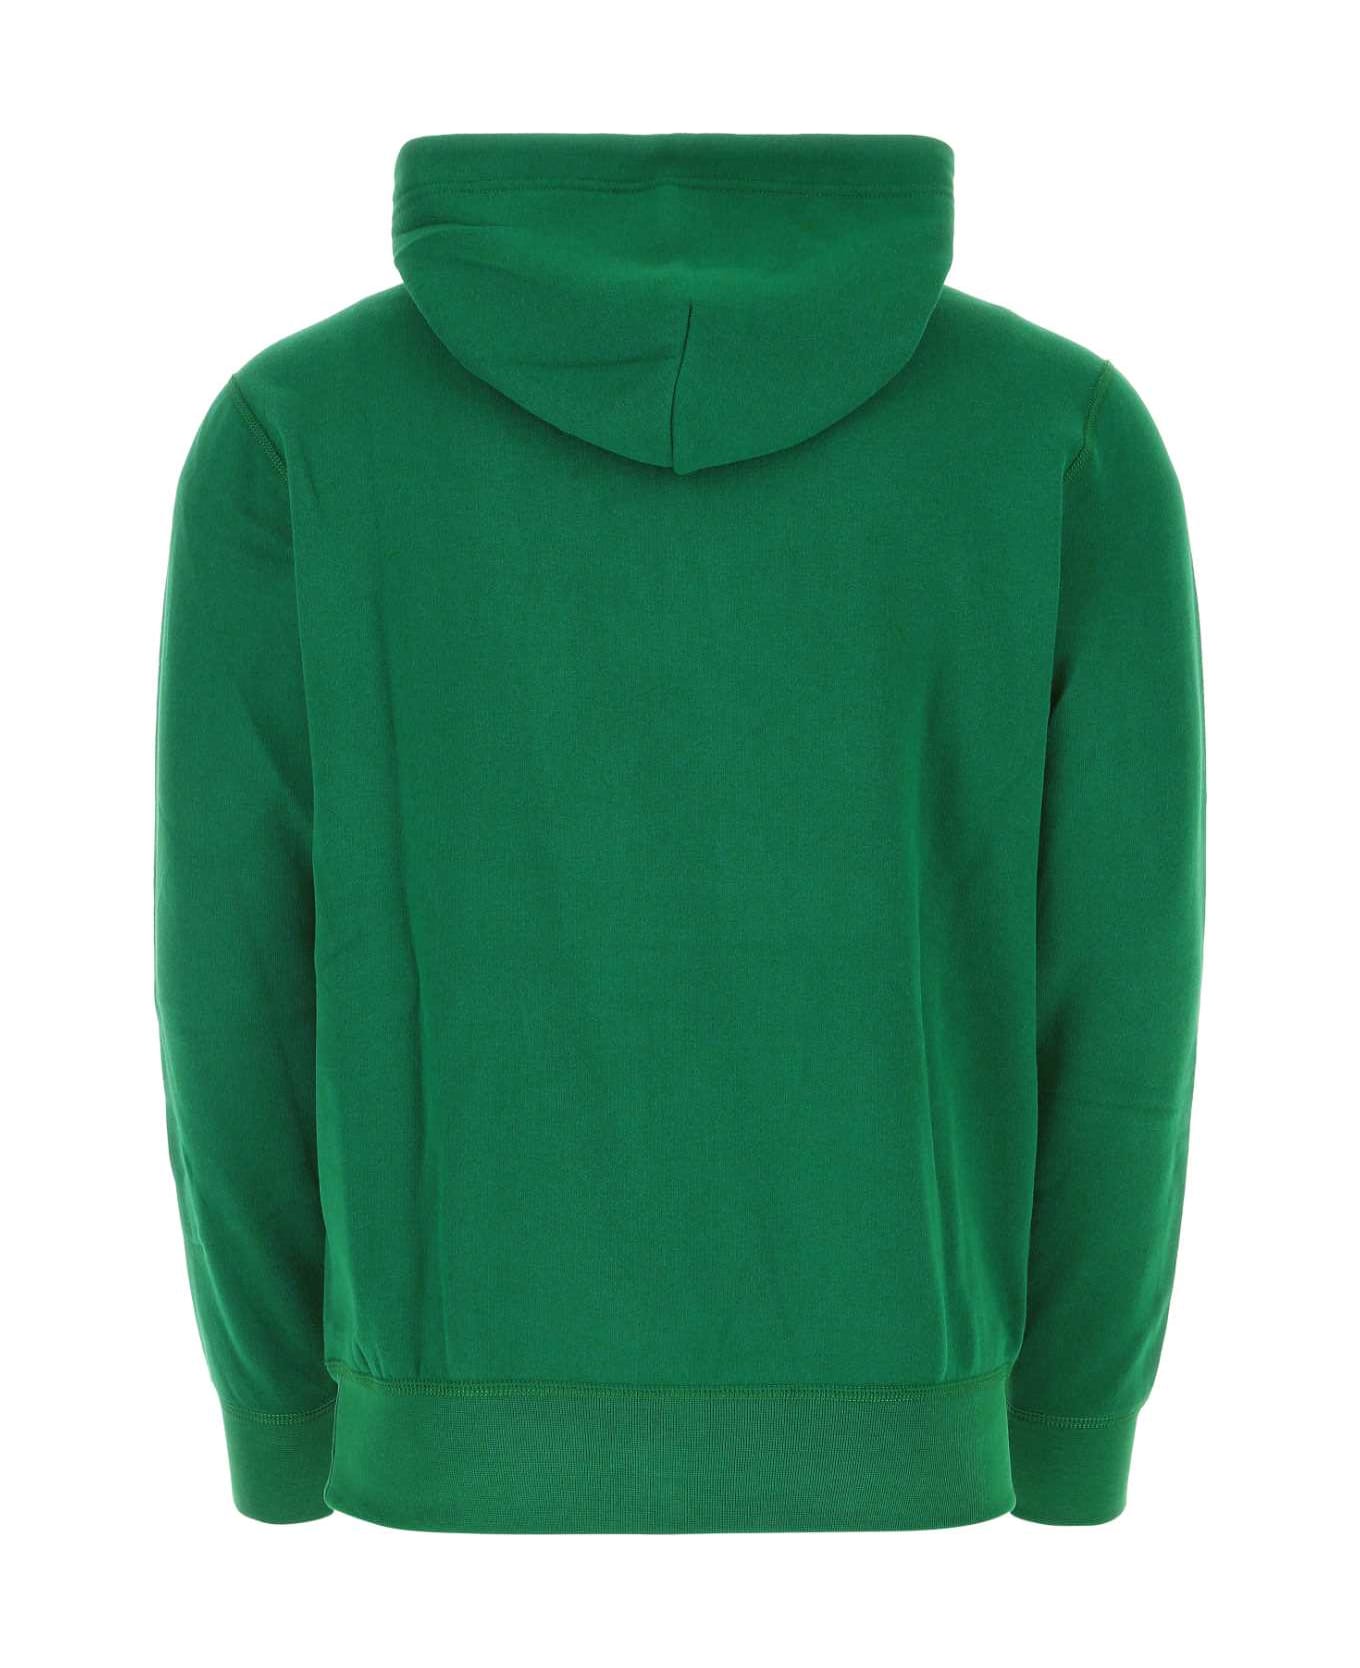 Polo Ralph Lauren Green Cotton Blend Sweatshirt - 060